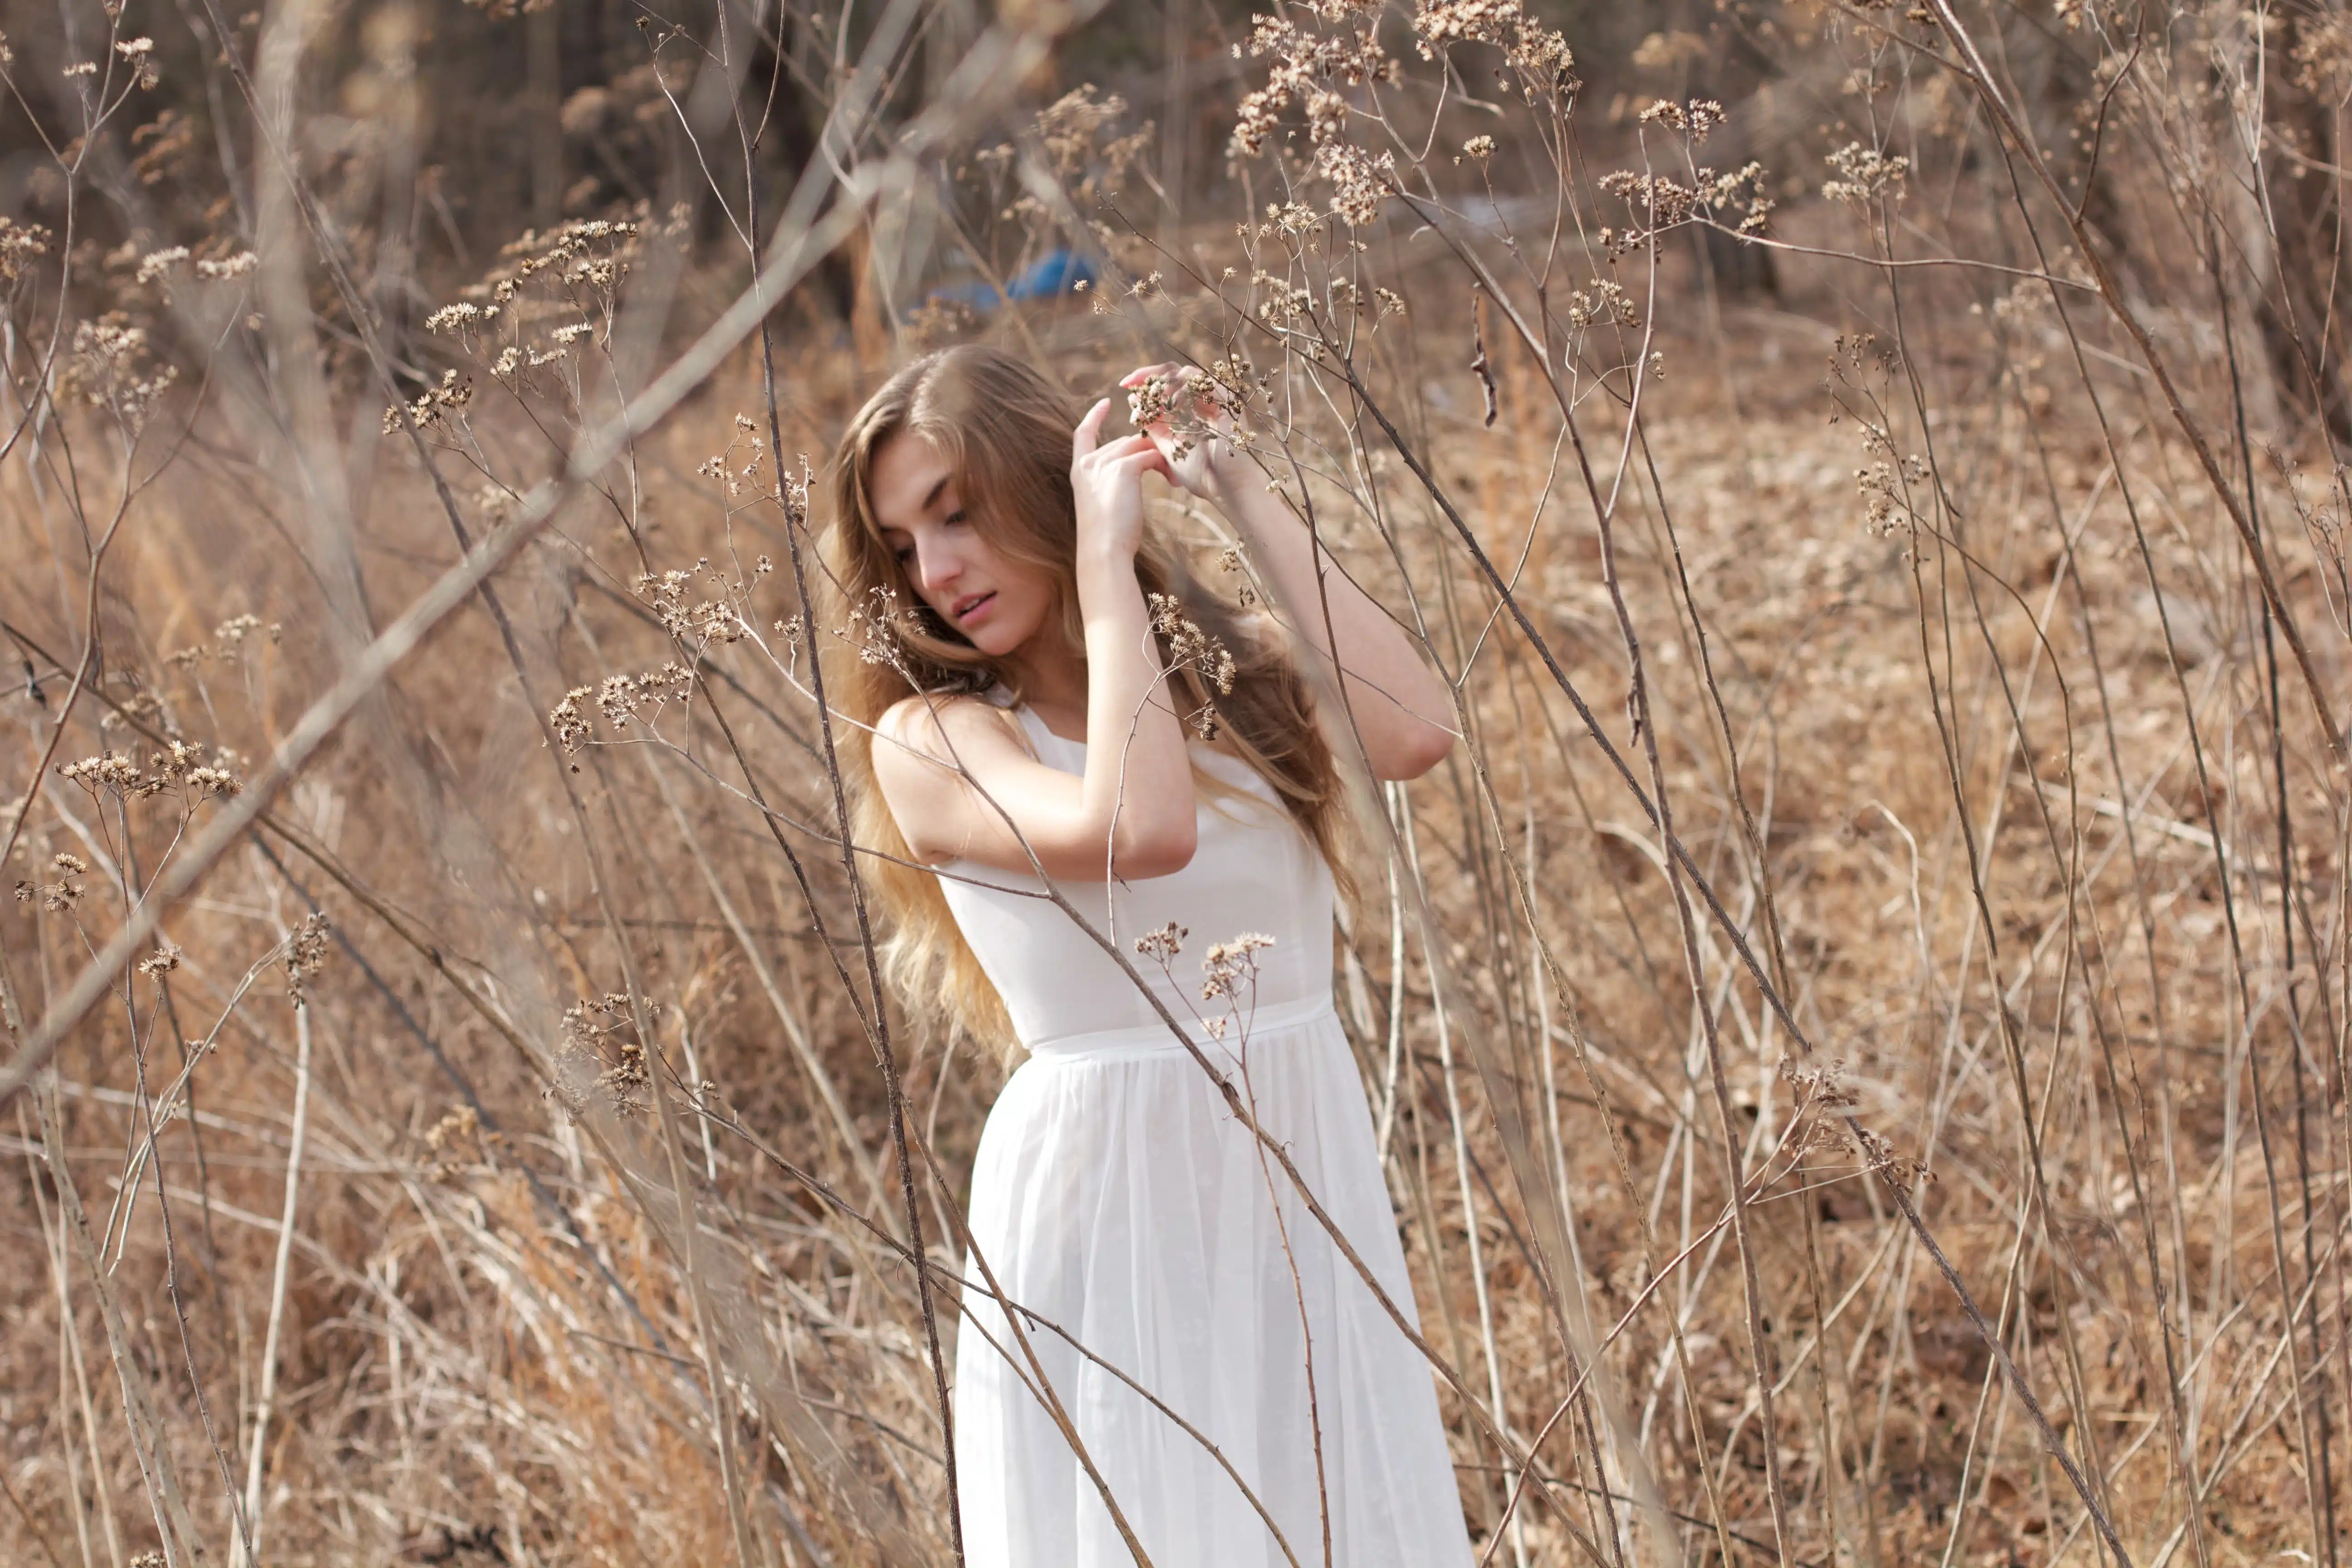 Woman in white dress in a field